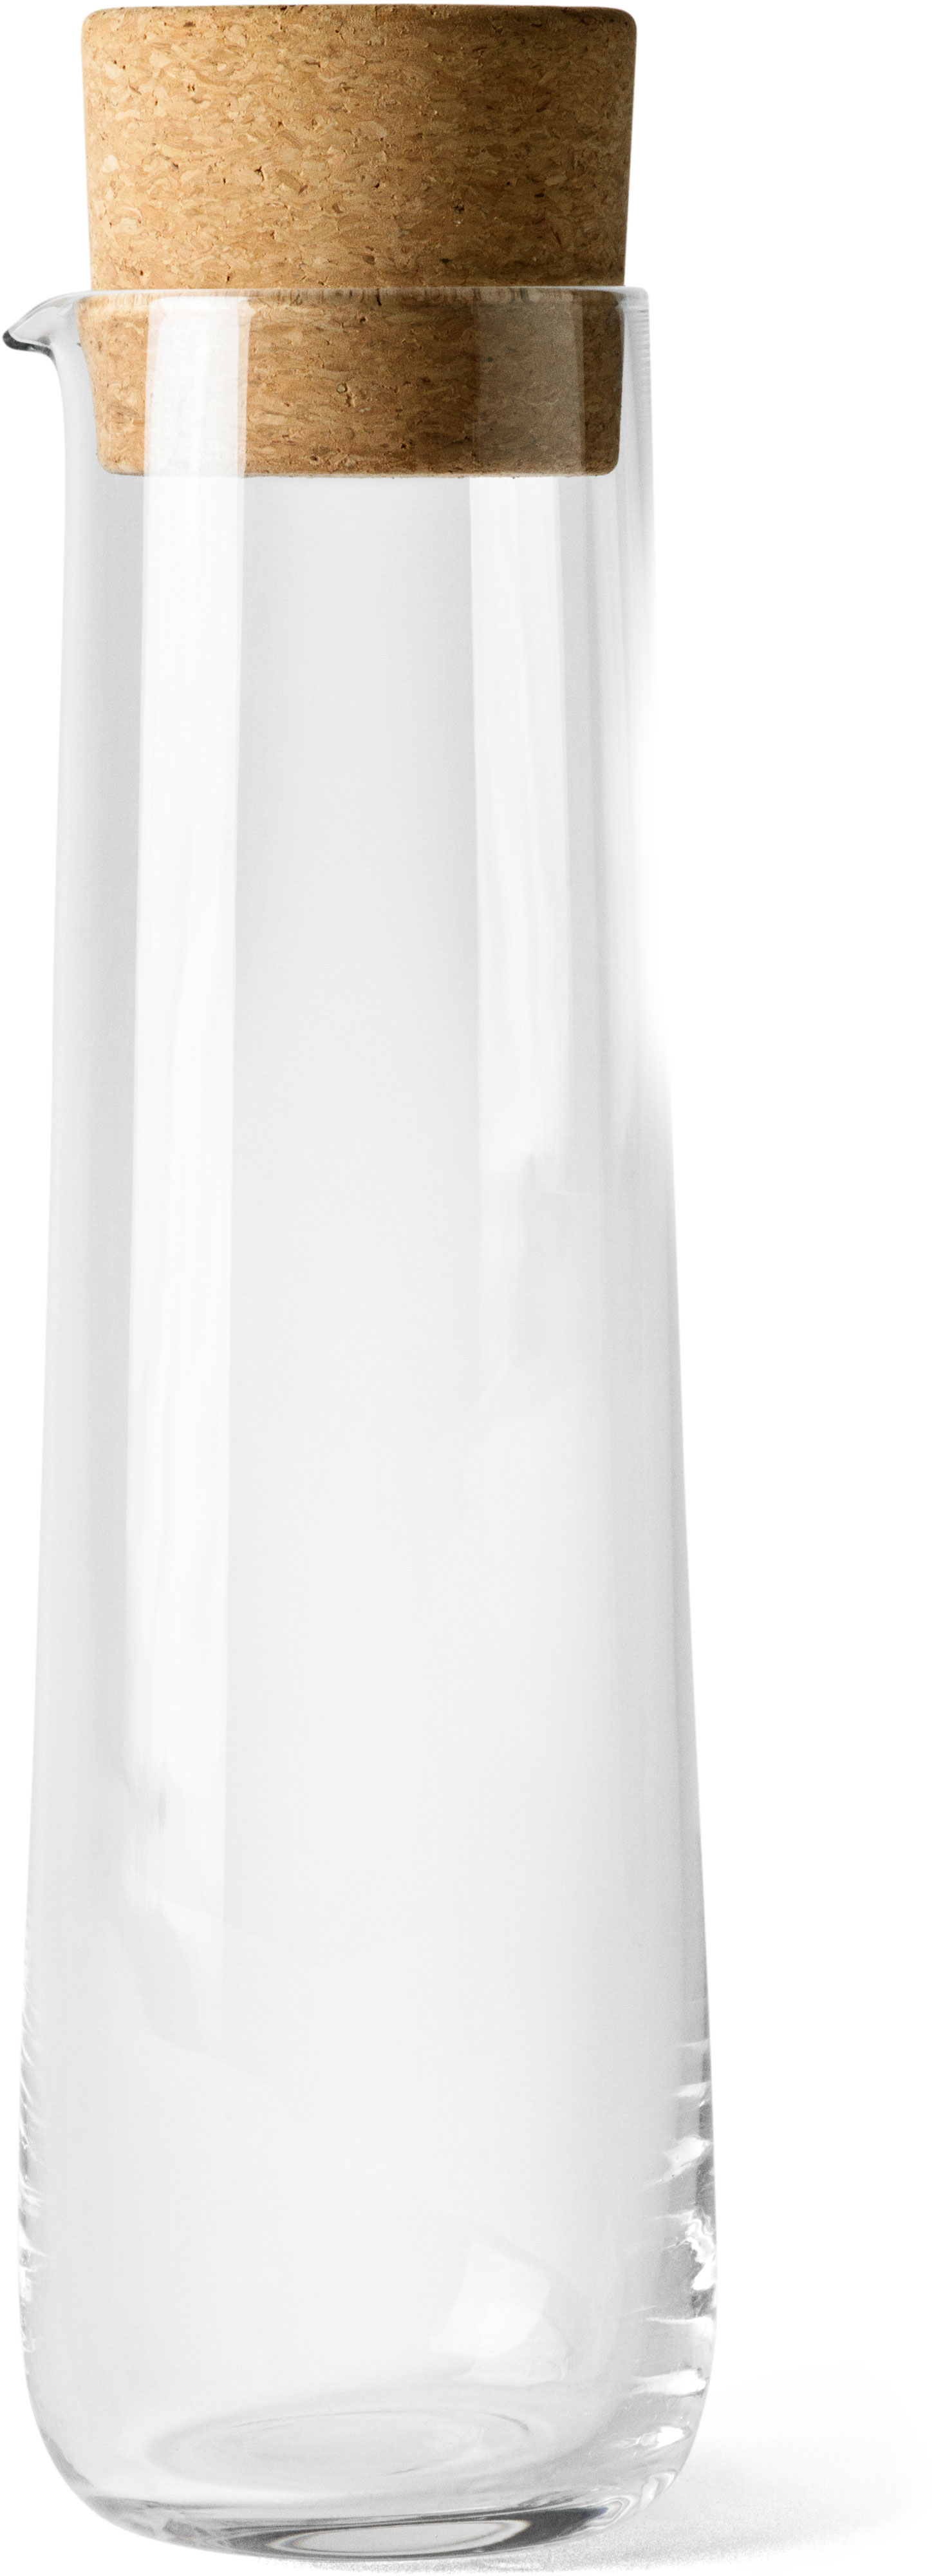 Audo Wasserkaraffe 1,2 Liter mit Korkdeckel